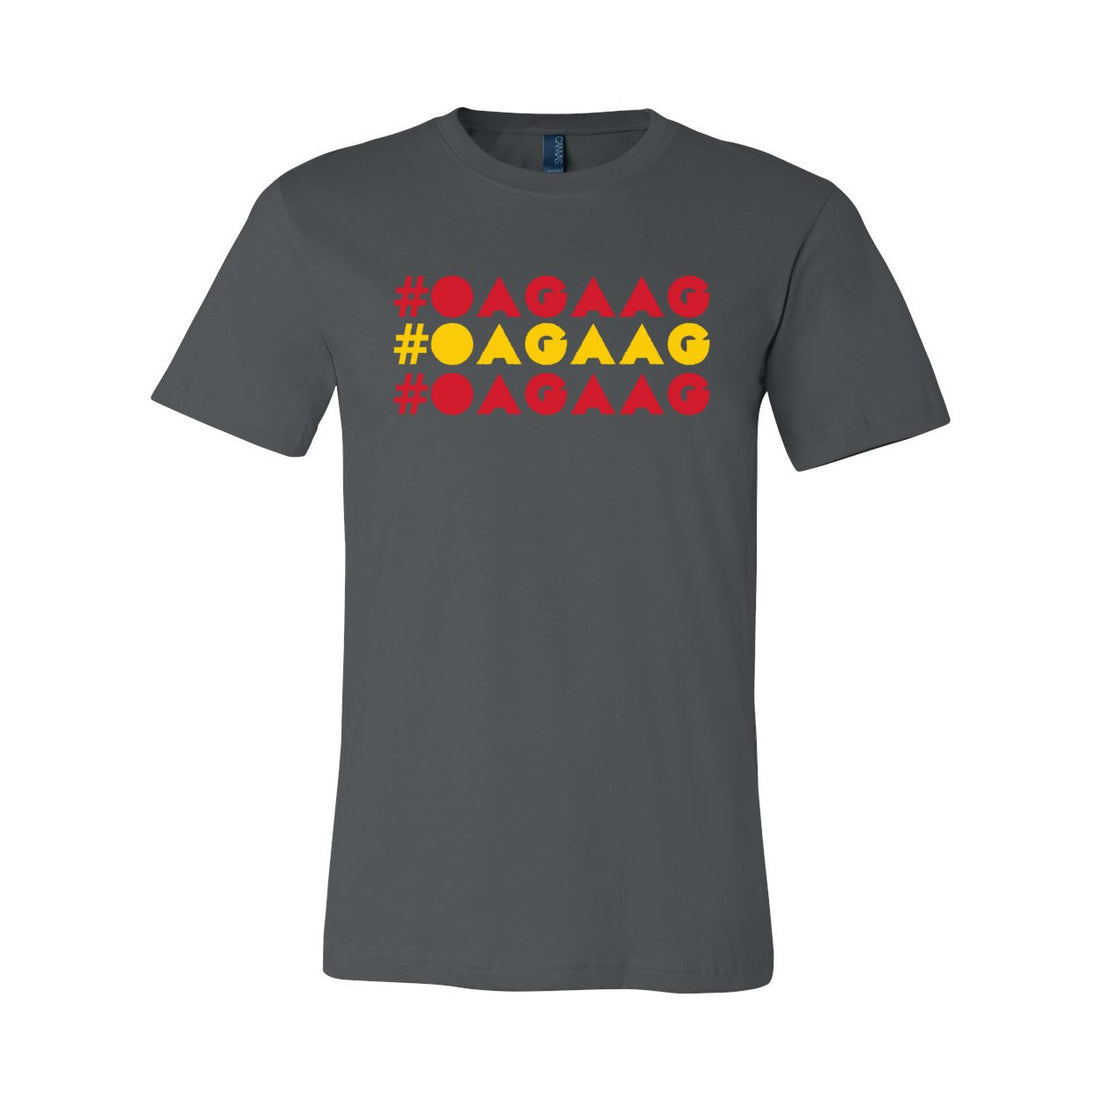 OAGAAG Short Sleeve Jersey Tee - T-Shirts - Positively Sassy - OAGAAG Short Sleeve Jersey Tee